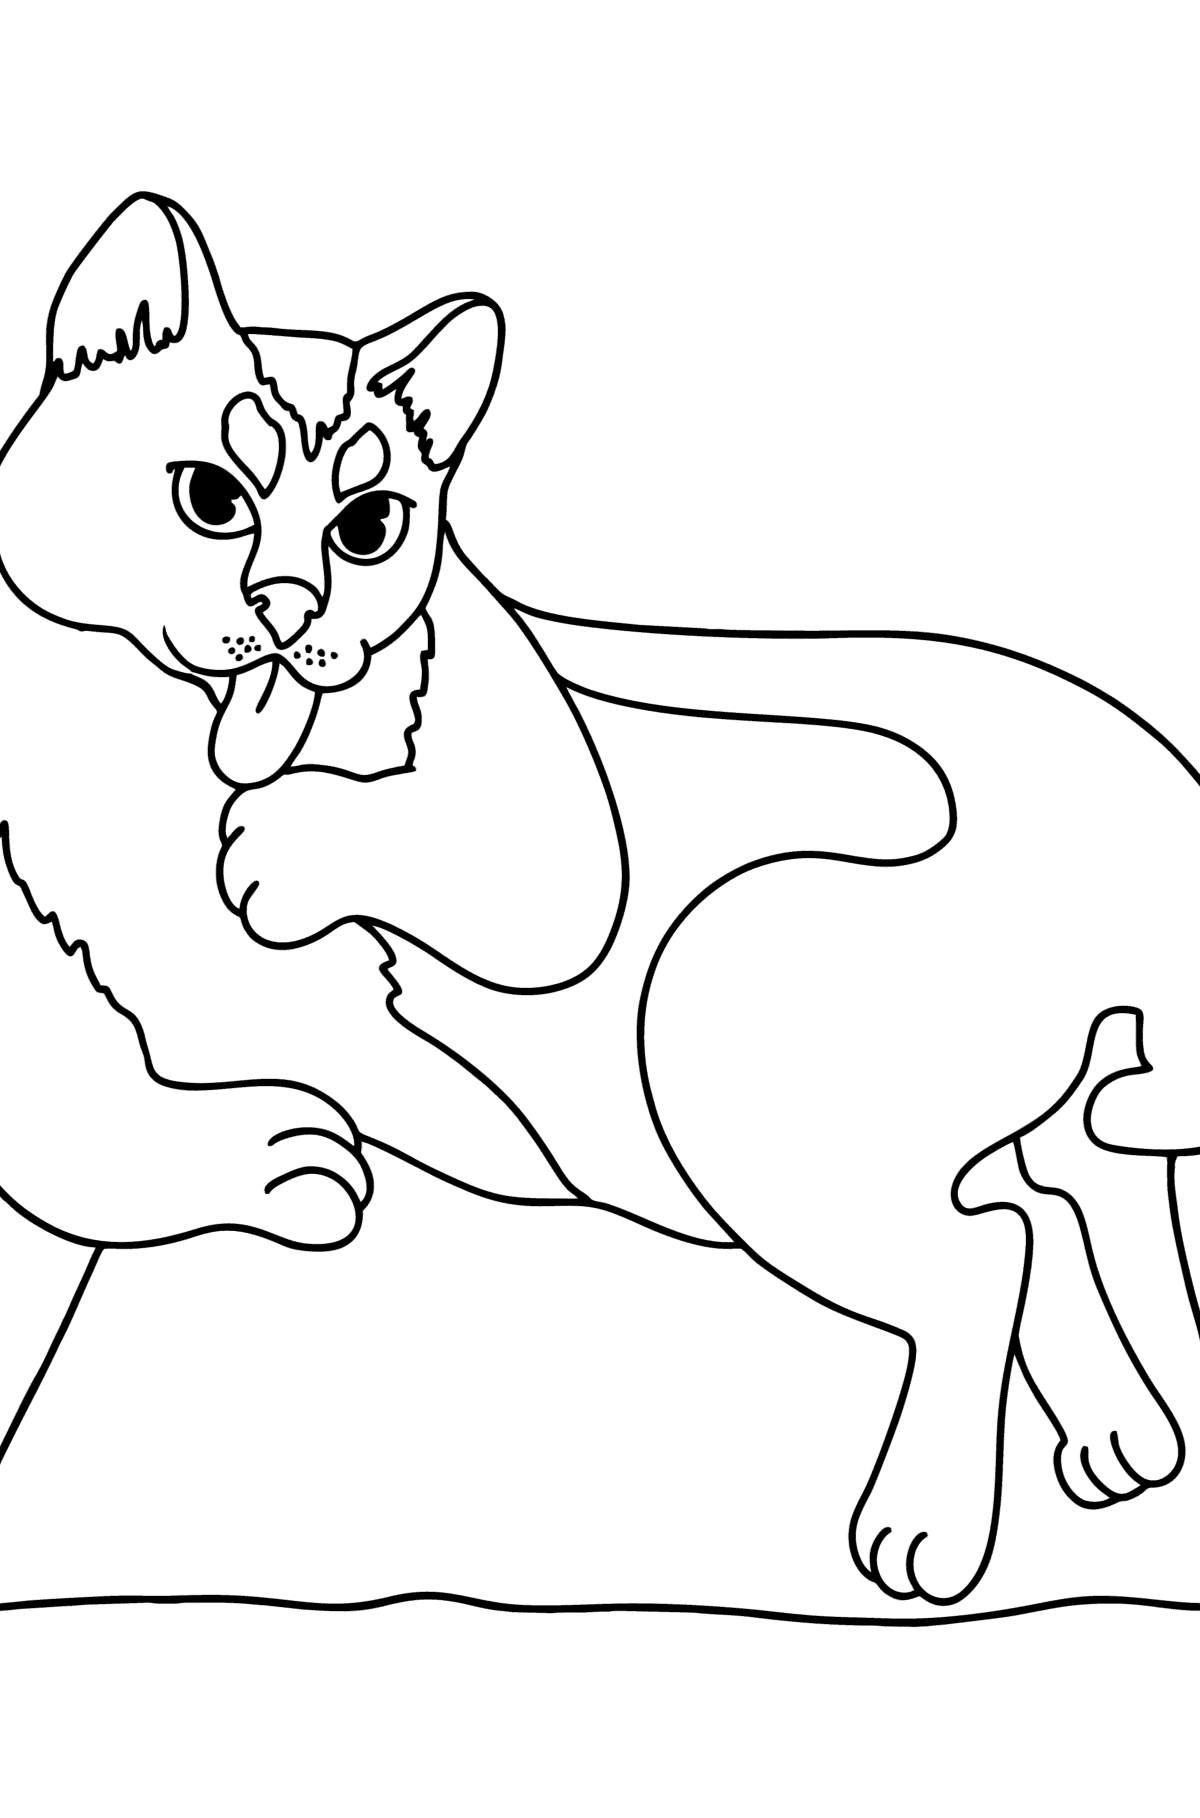 Desenho para colorir do gato preto - Imagens para Colorir para Crianças